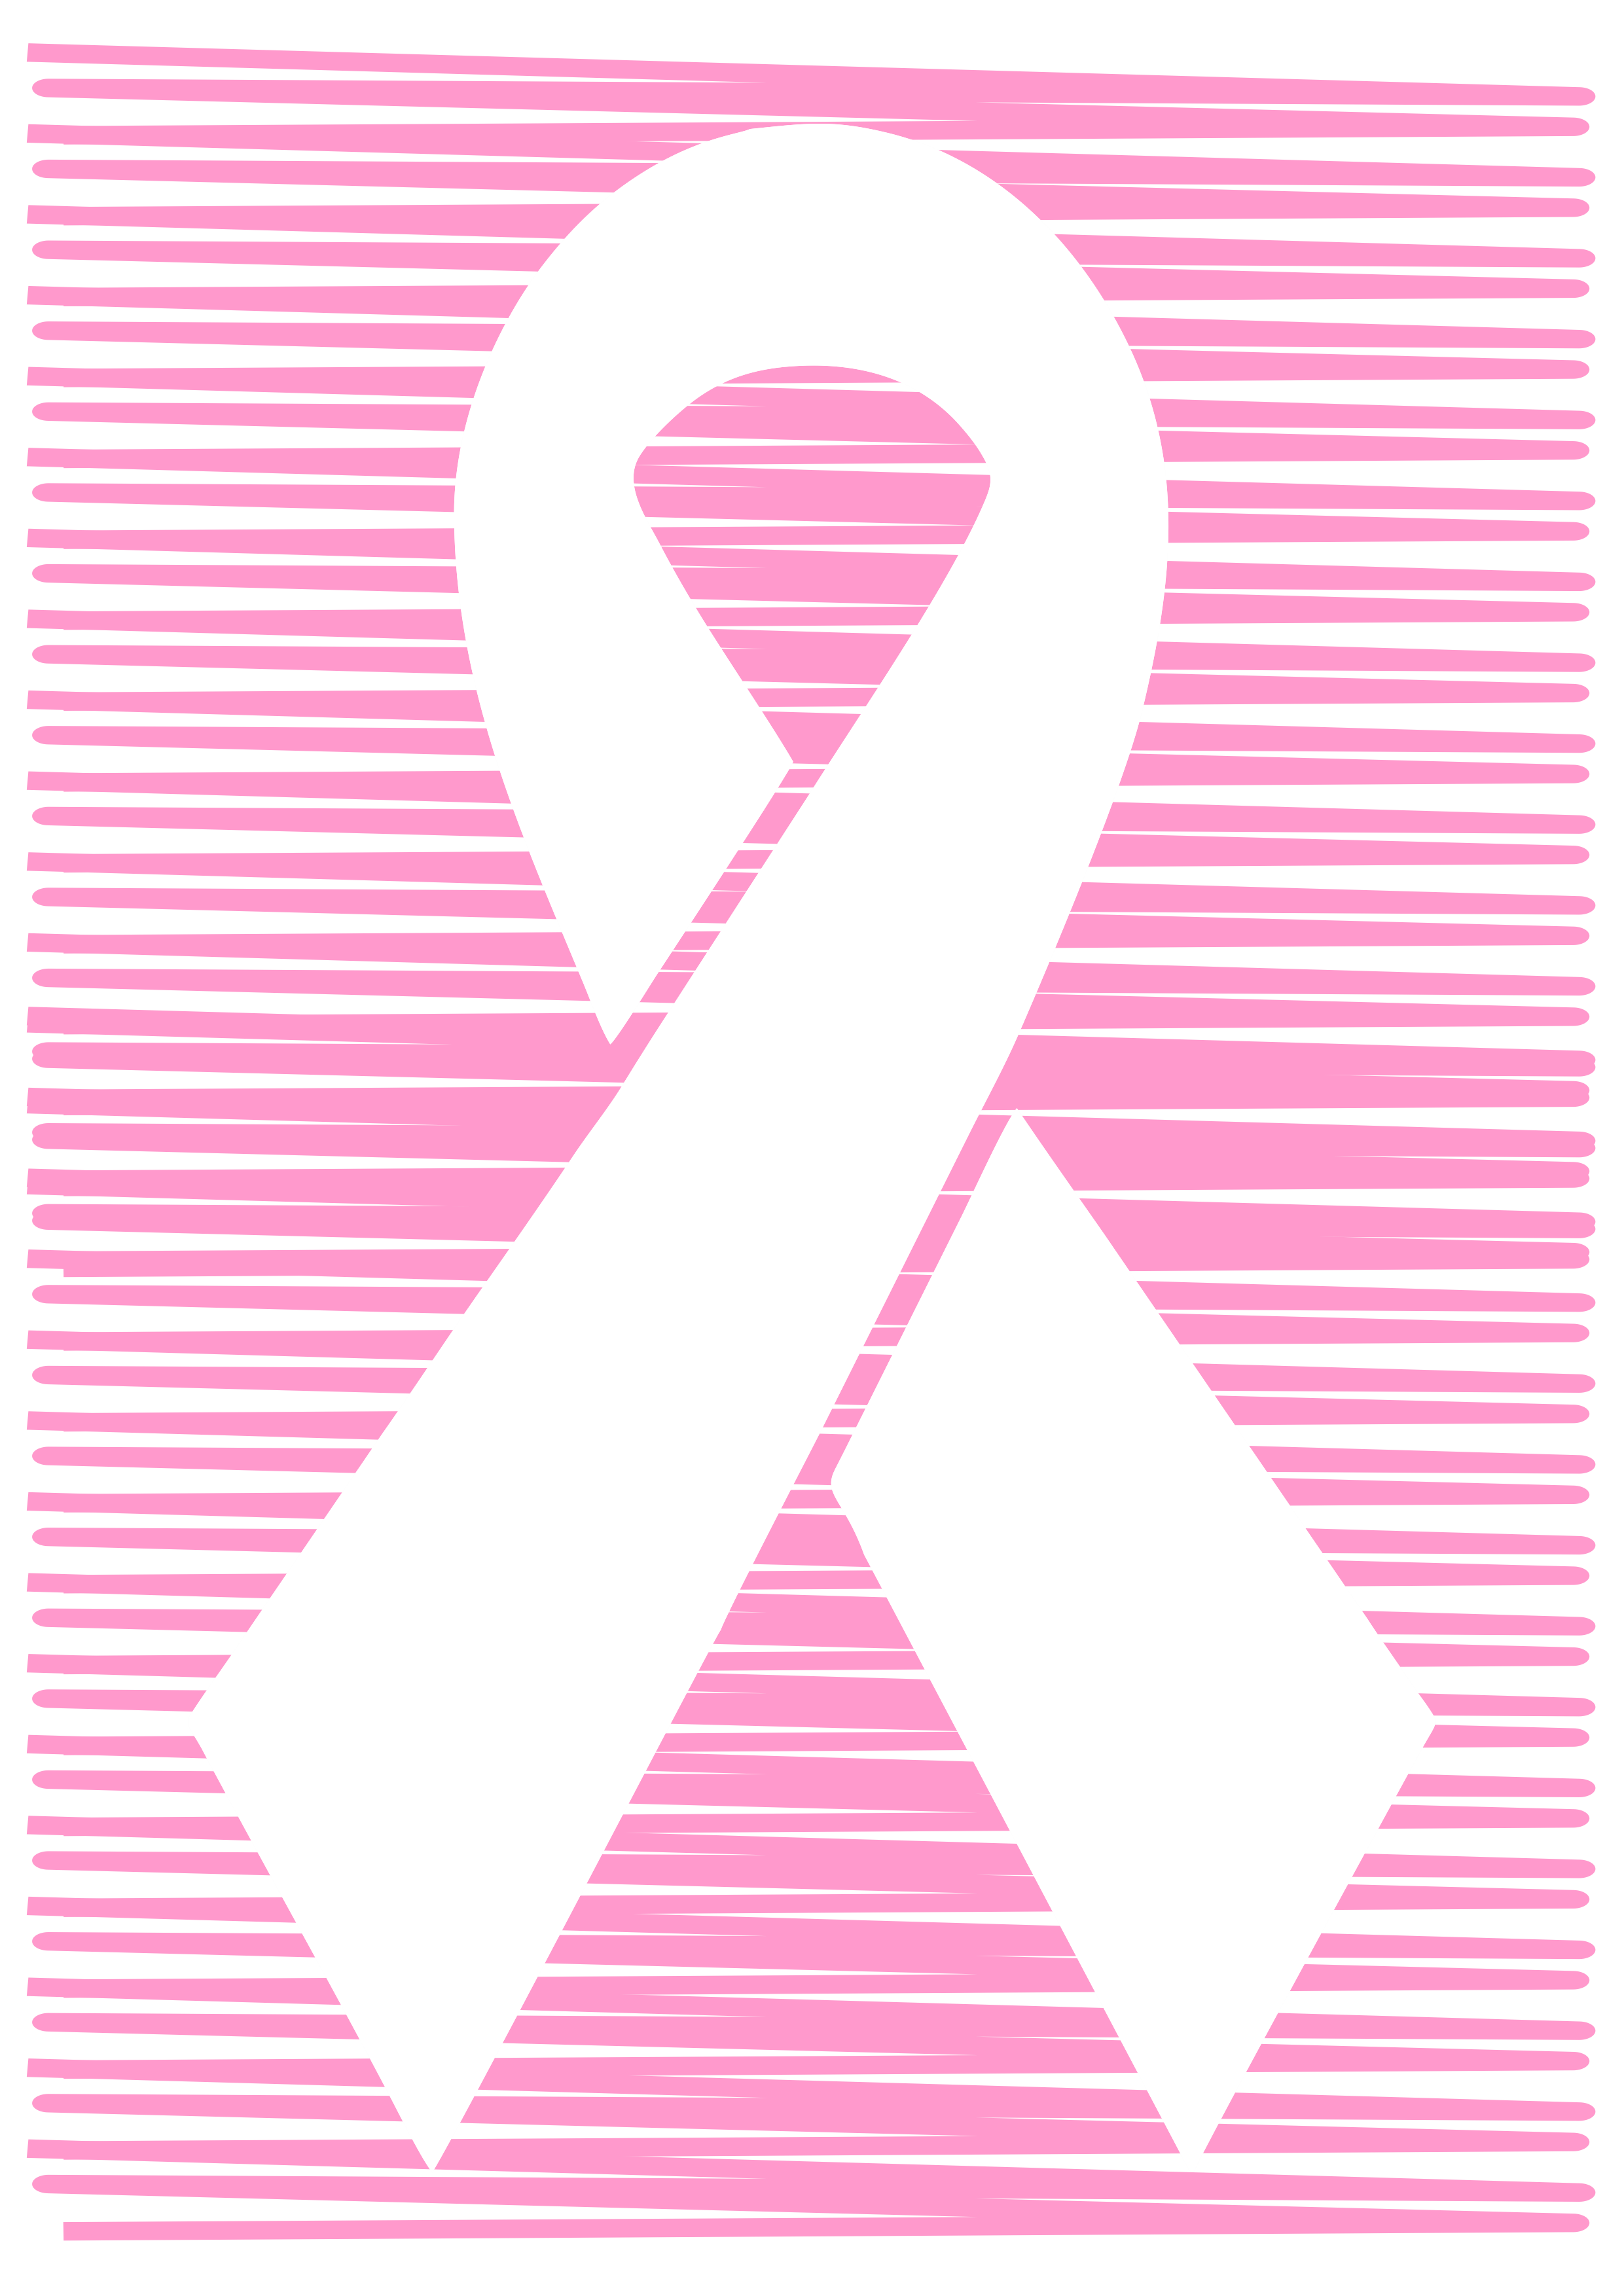 Outubro rosa mês de prevenção ao câncer de mama lacinho de fita artes gráficas rabiscado decorativo png